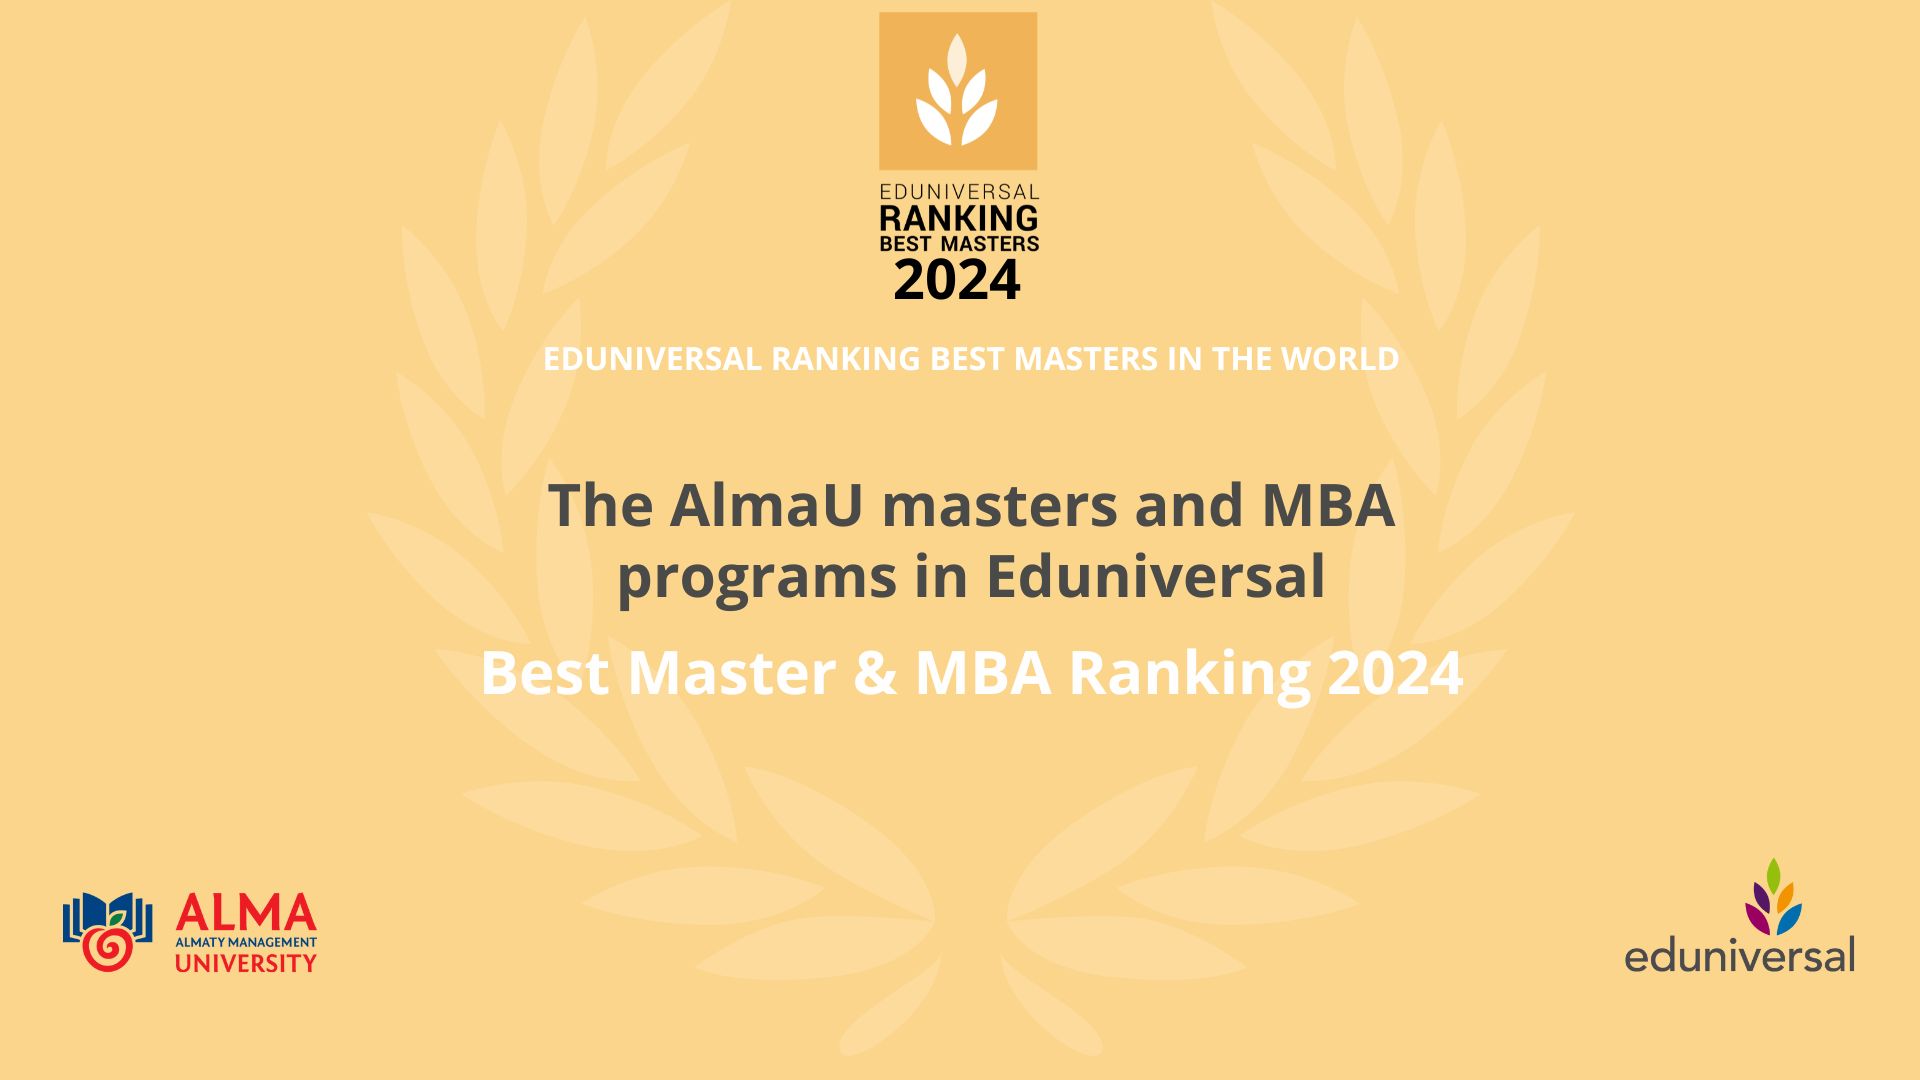  Программы магистратуры и МВА Almaty Management University вошли в рейтинг Eduniversal Best Masters & MBA Ranking 2024